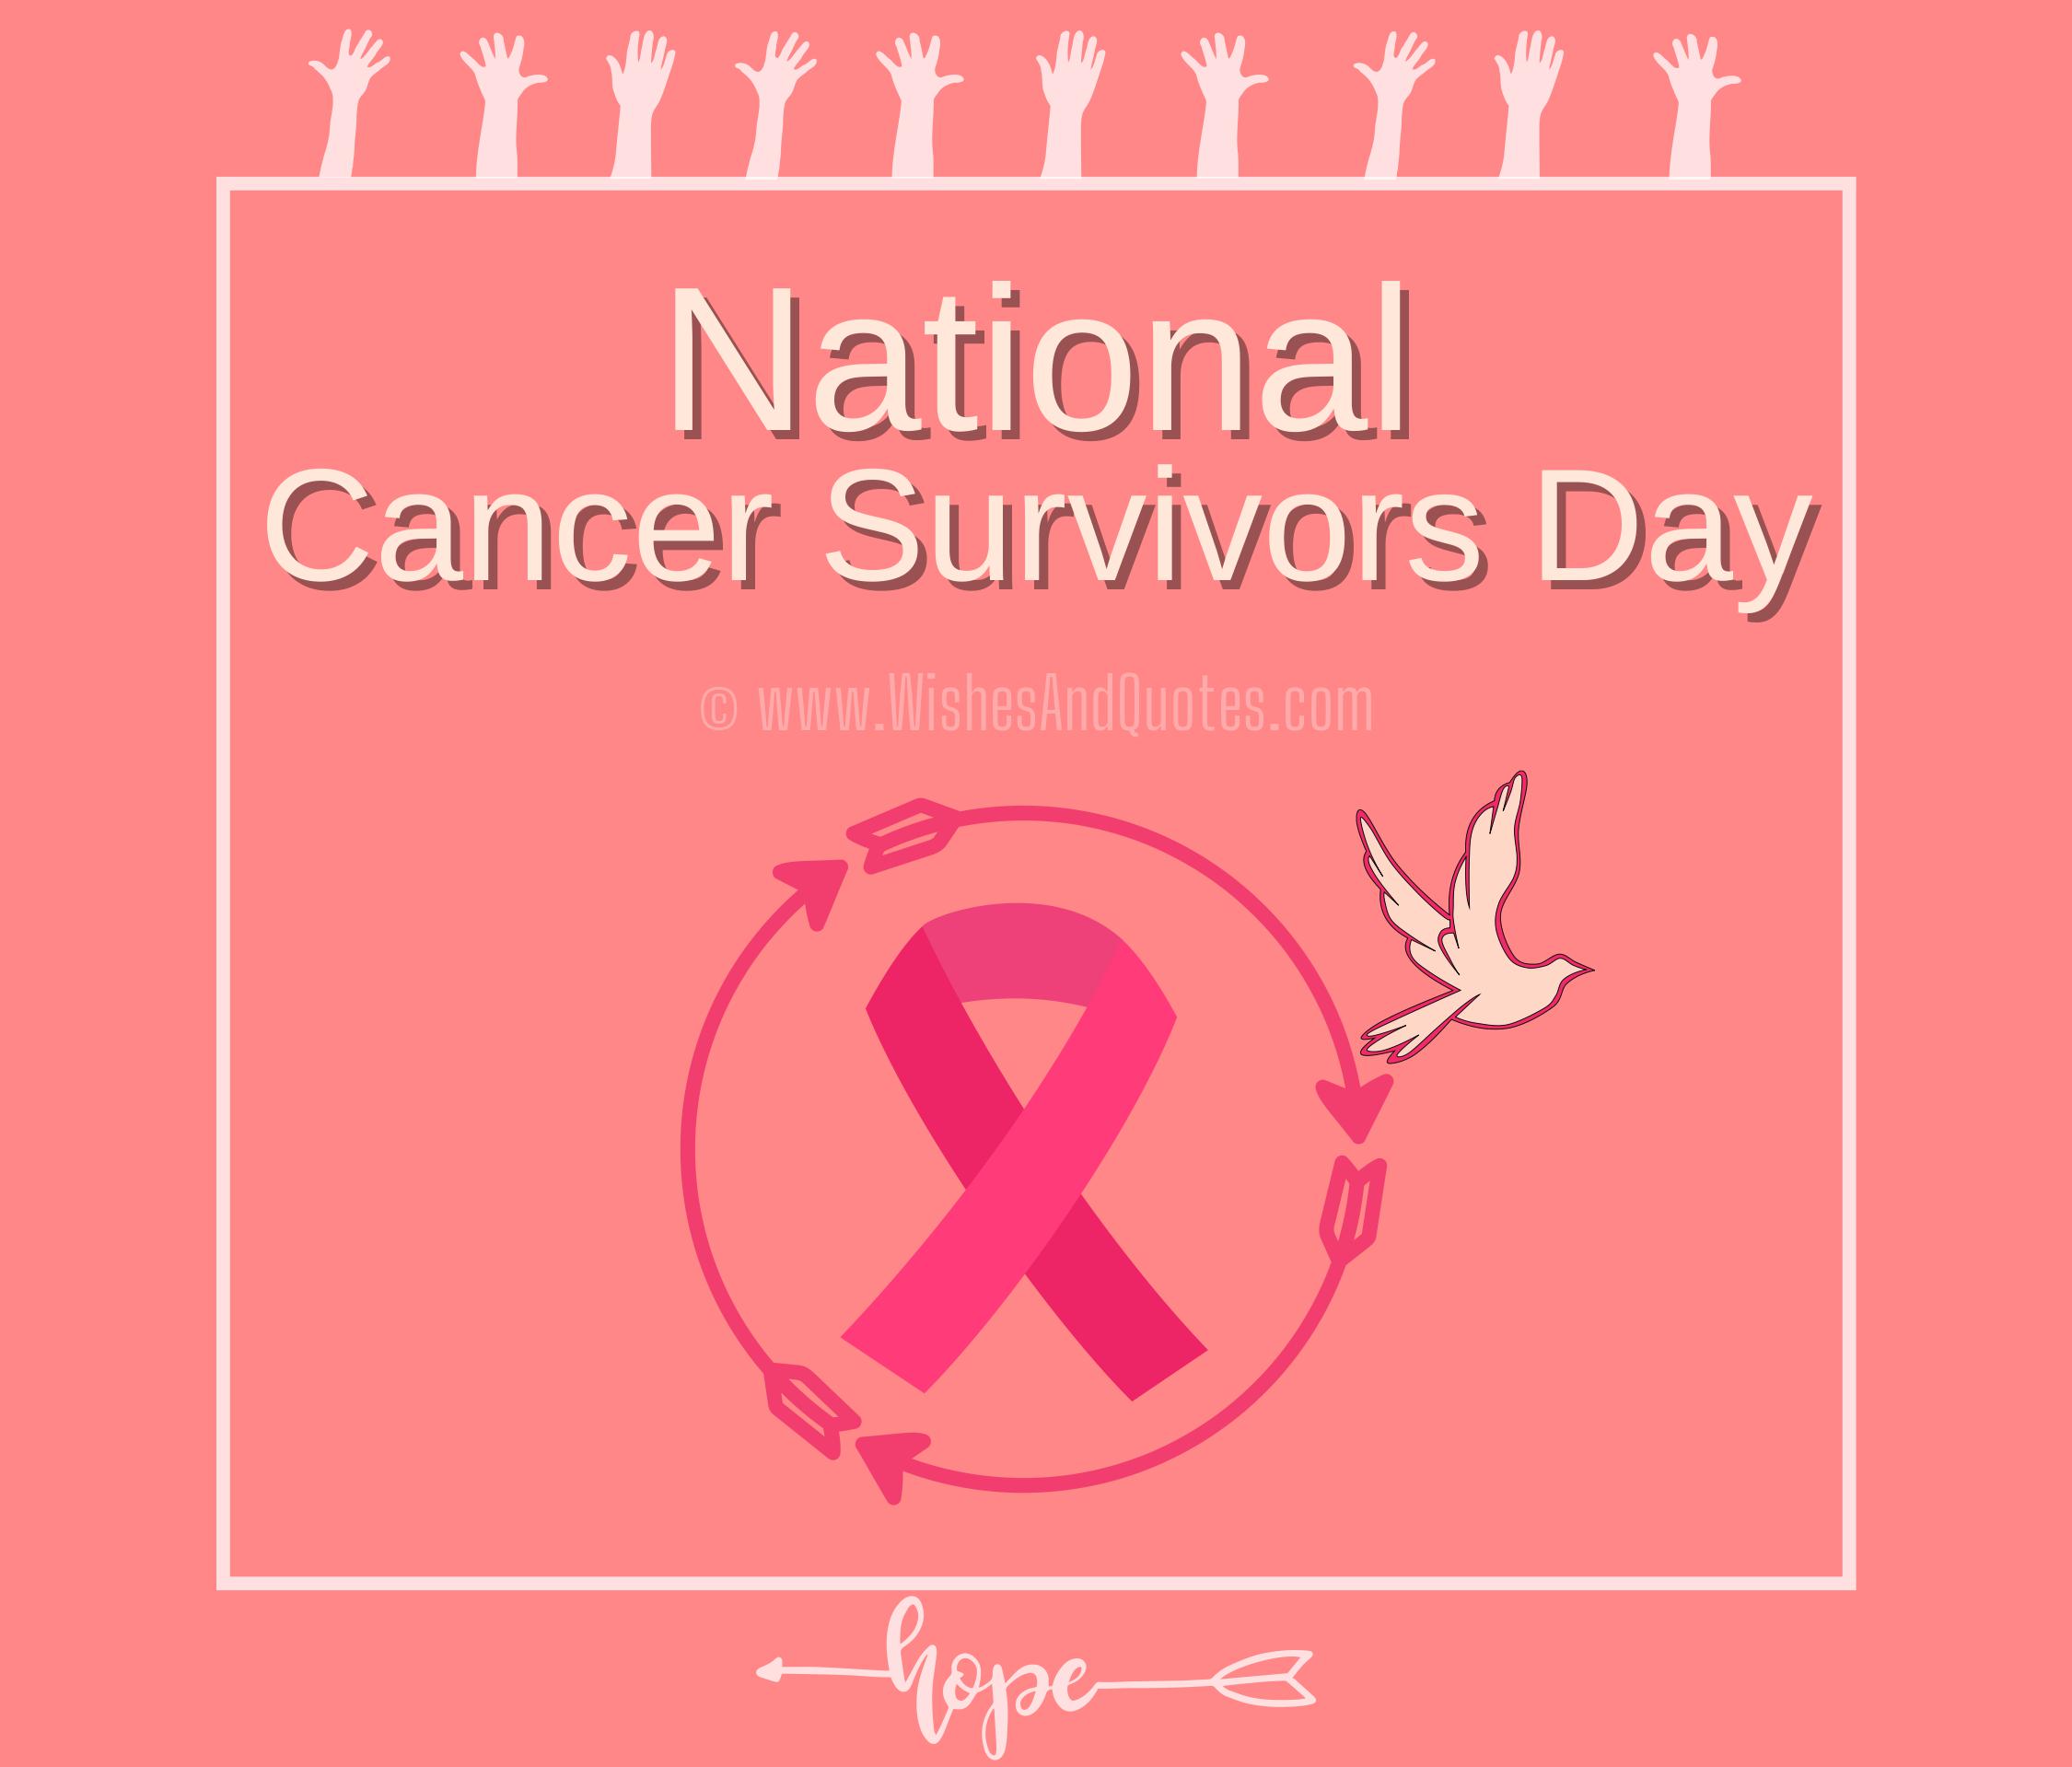 Cancer Survivors Day